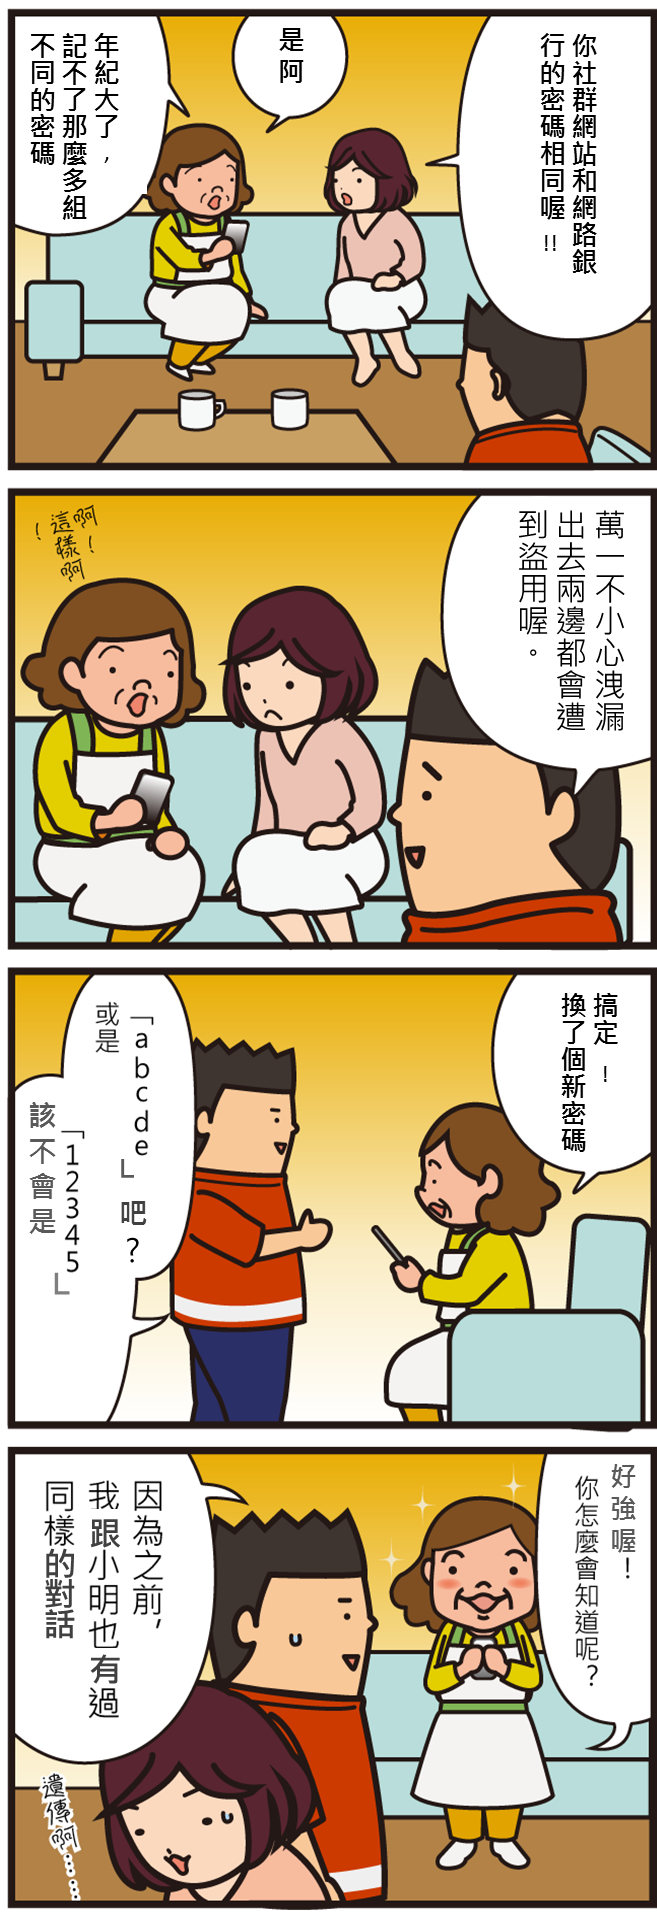 日本資安漫畫 10 密碼設定